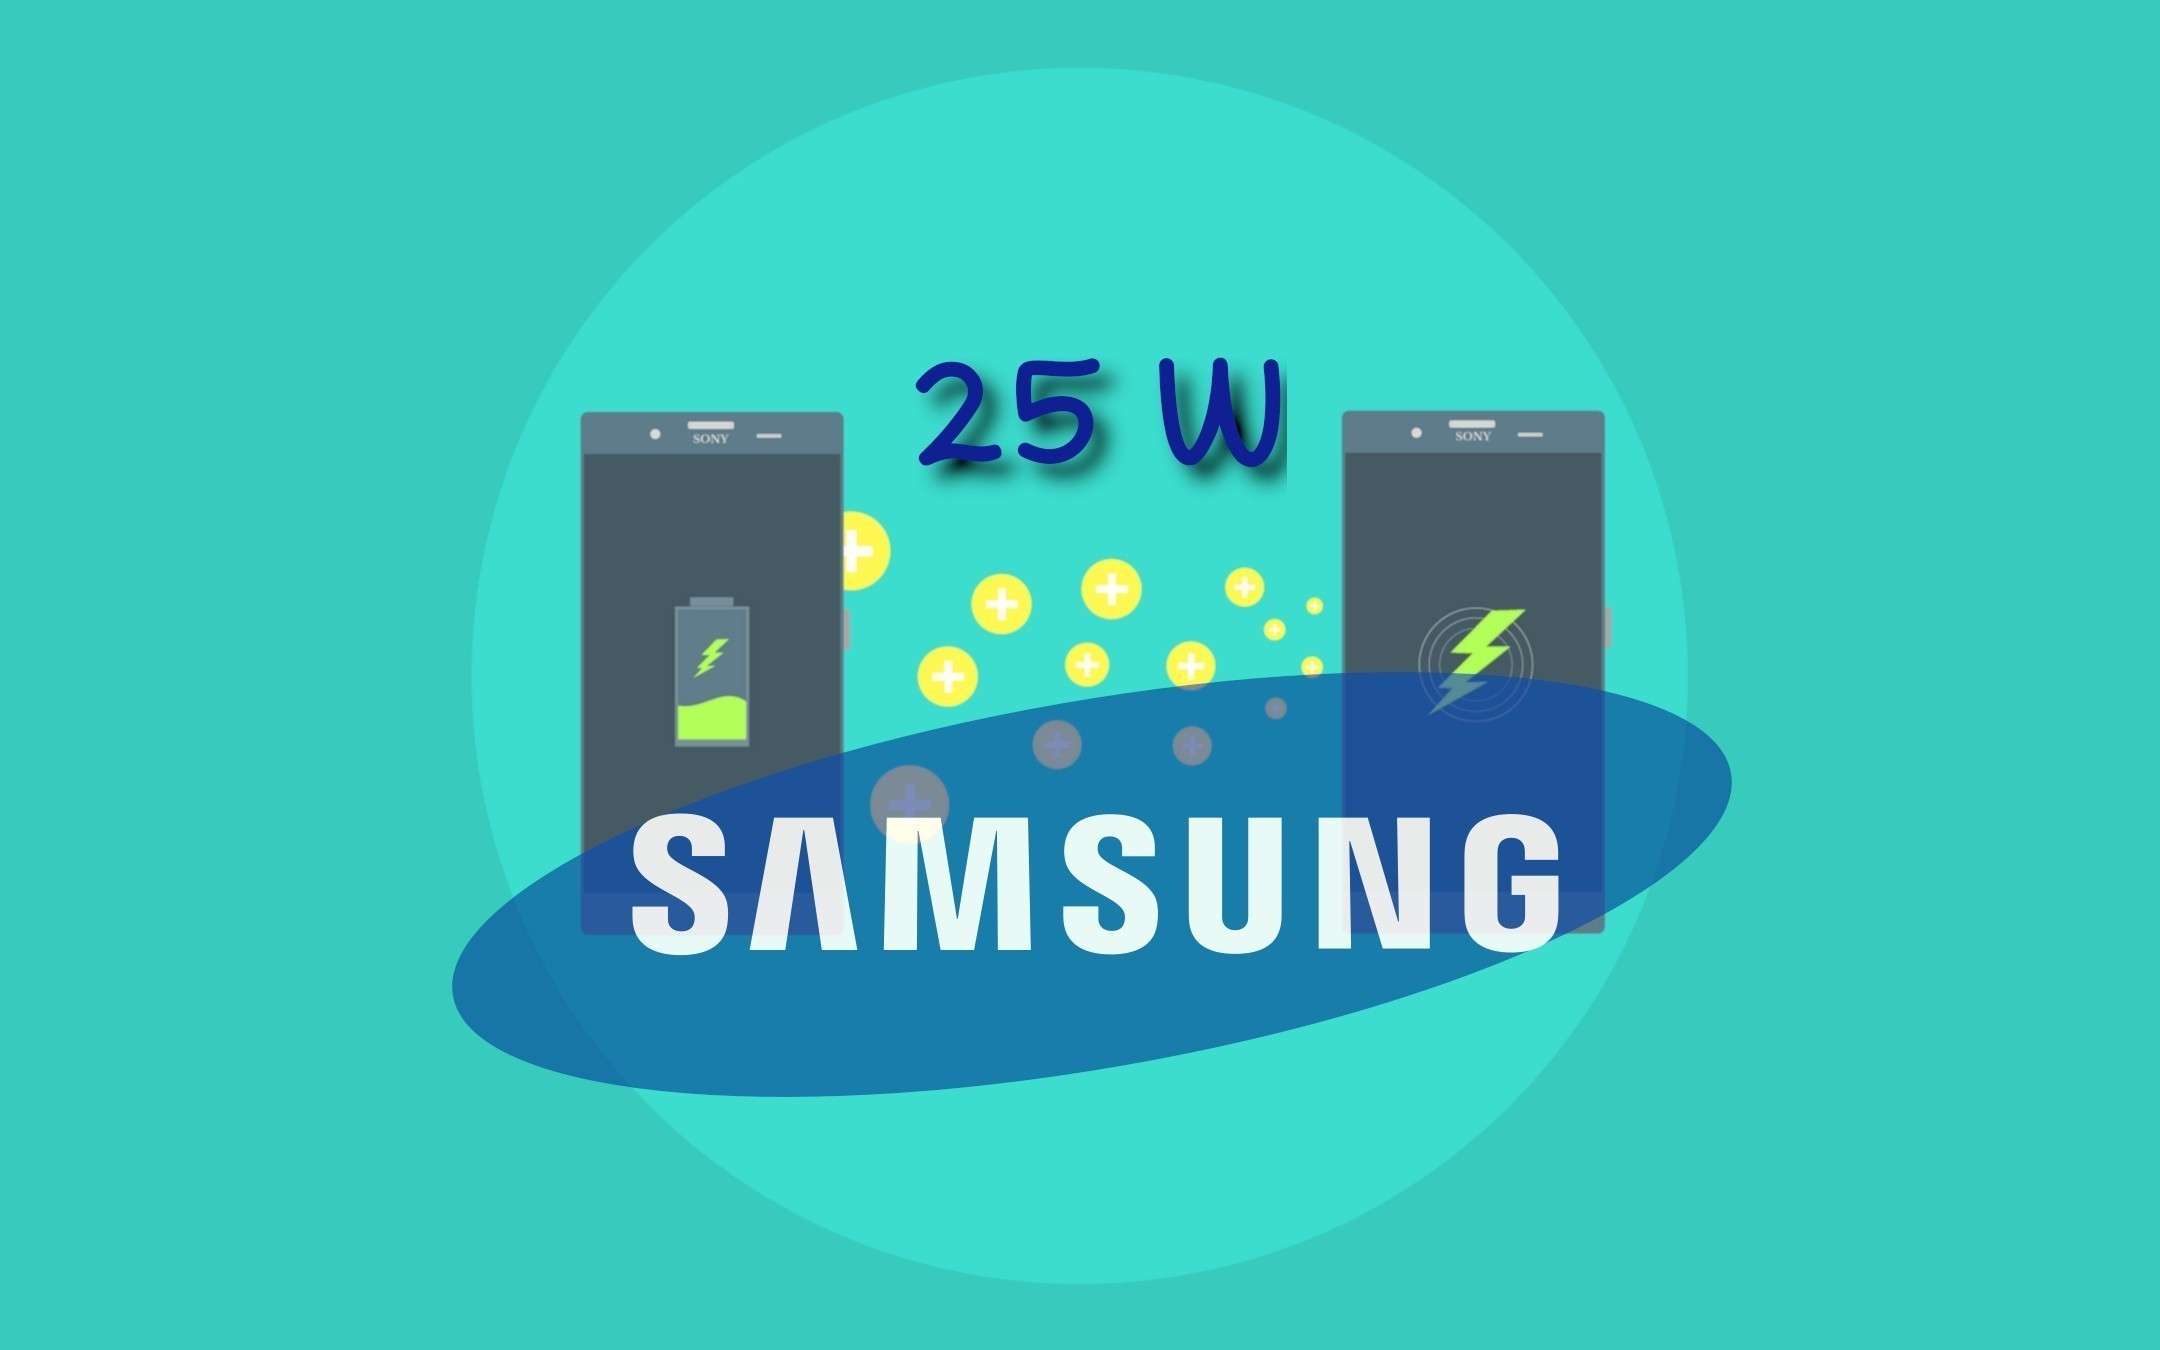 Samsung Galaxy Note 10 supporterà la ricarica 25W